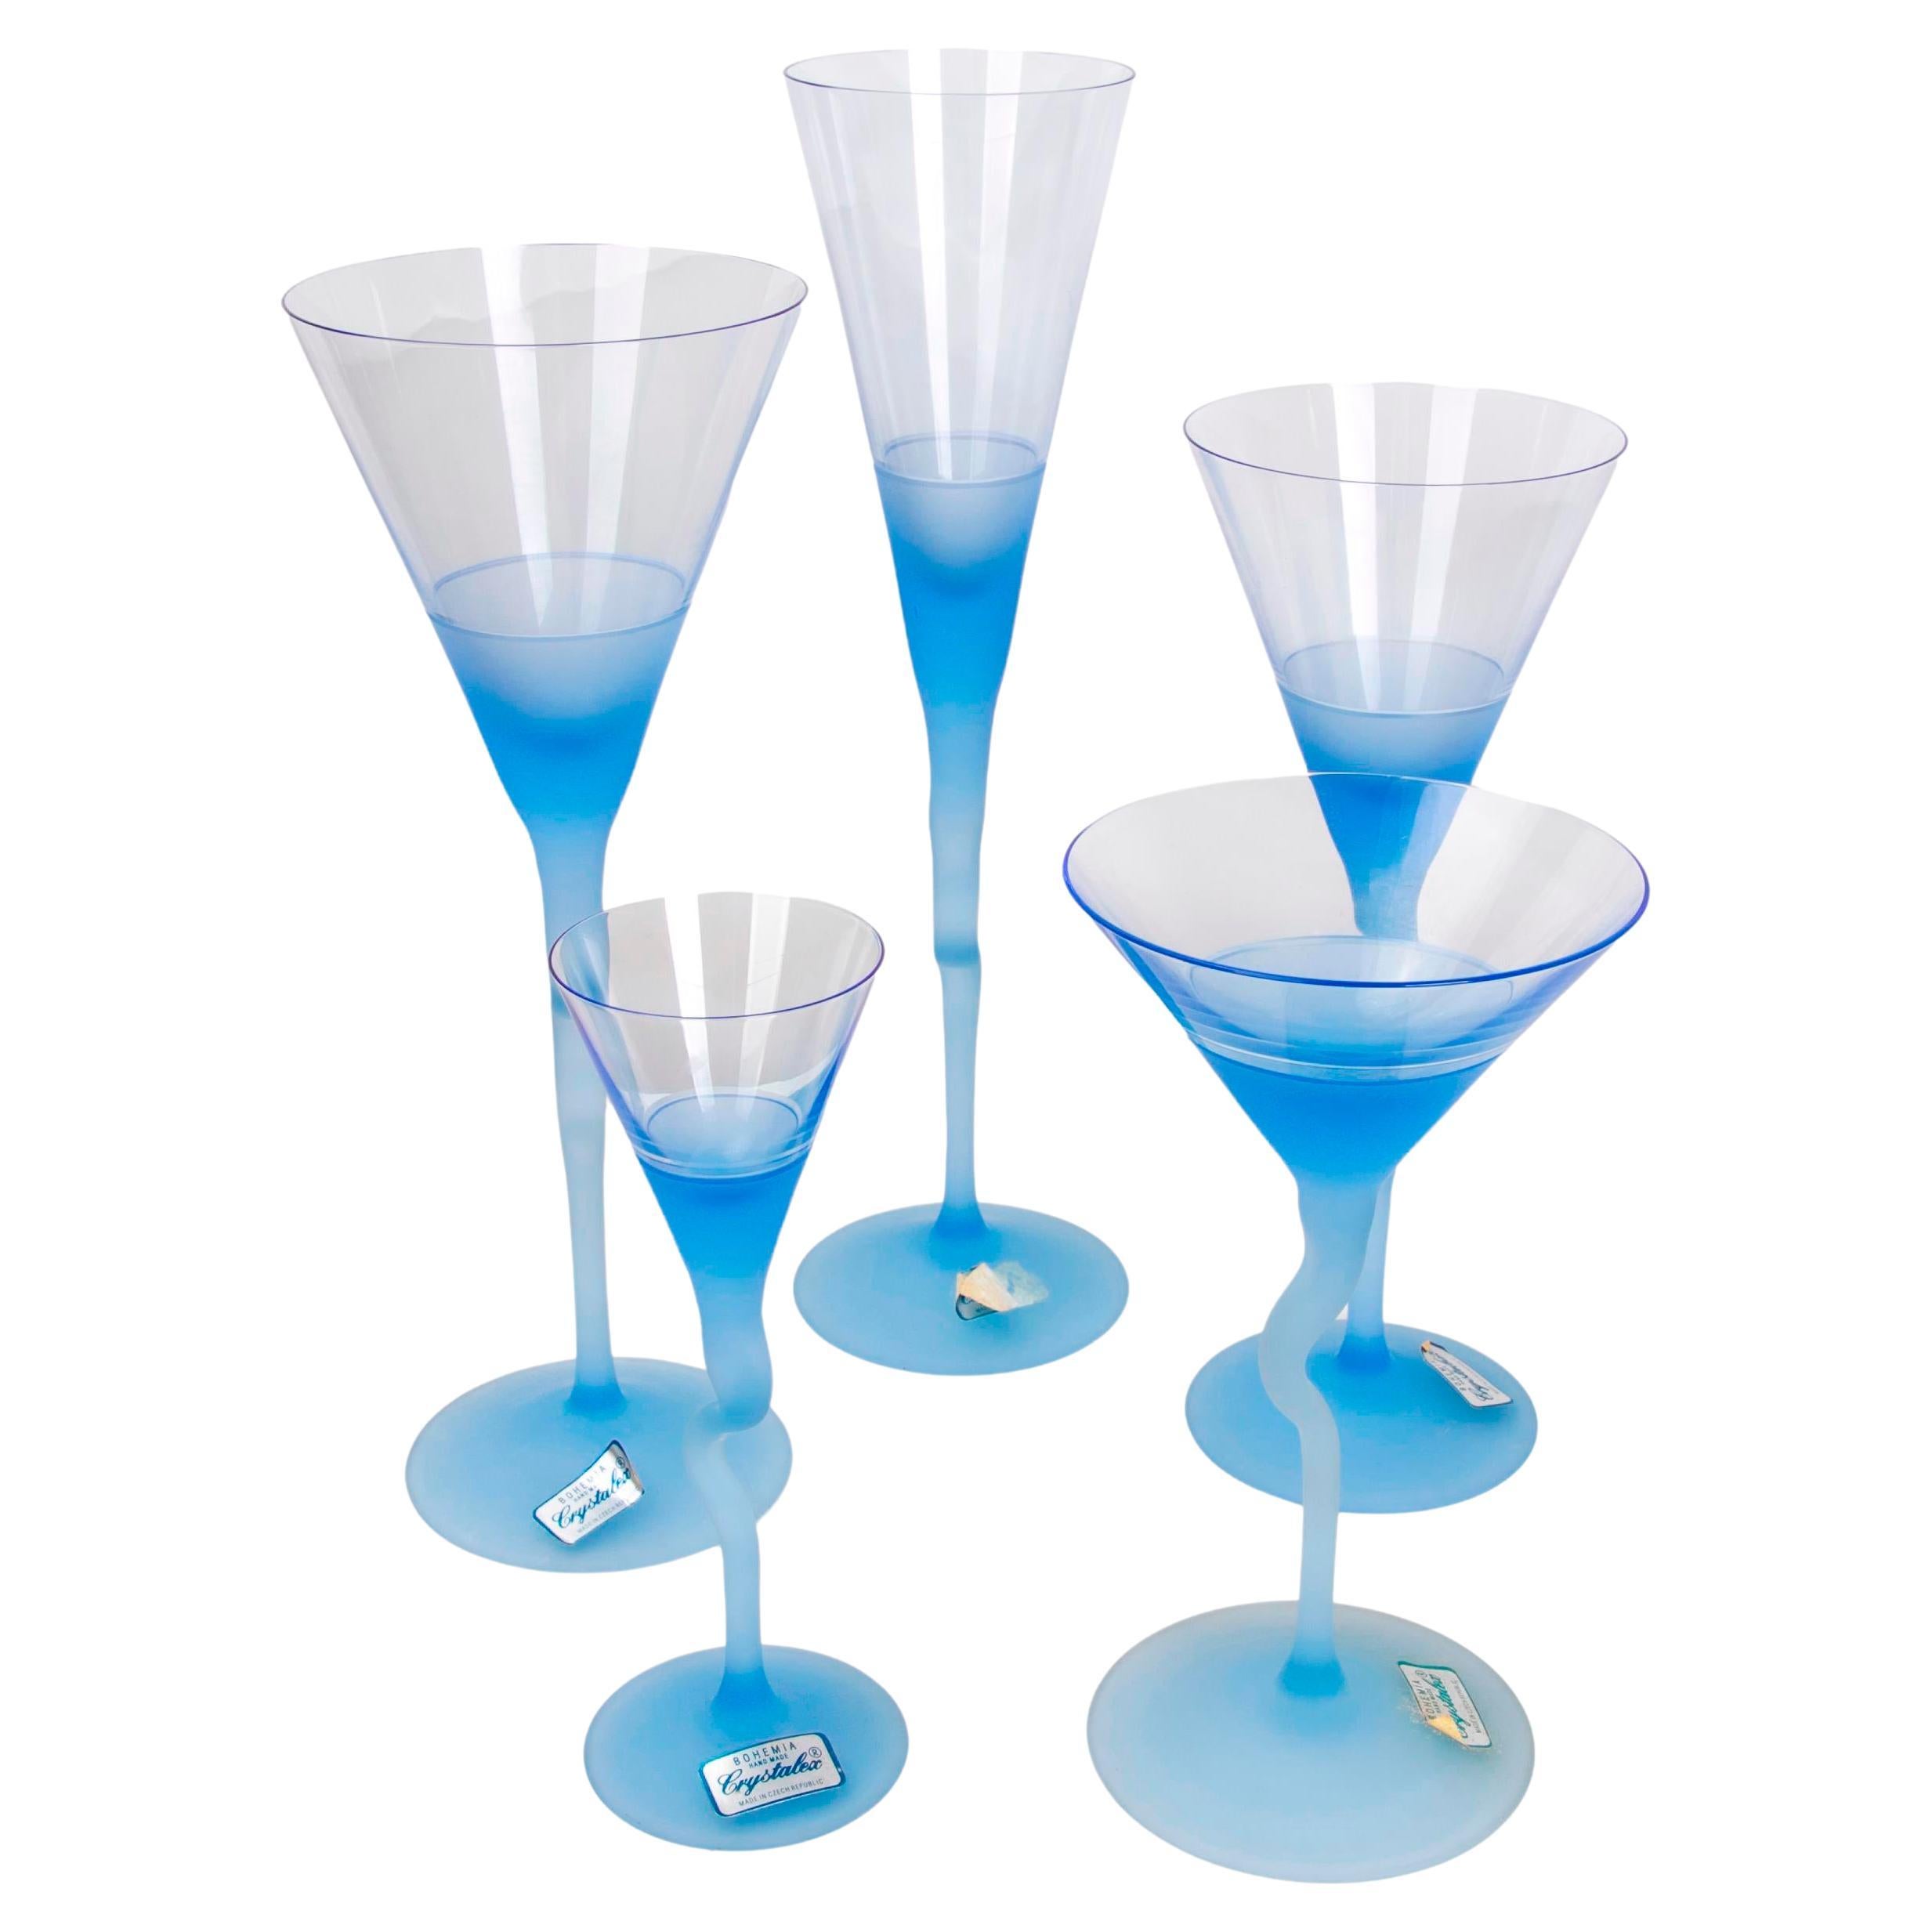 Glaswaren aus vierunddreißig verschiedenen böhmischen Gläsern in verschiedenen Größen im Angebot